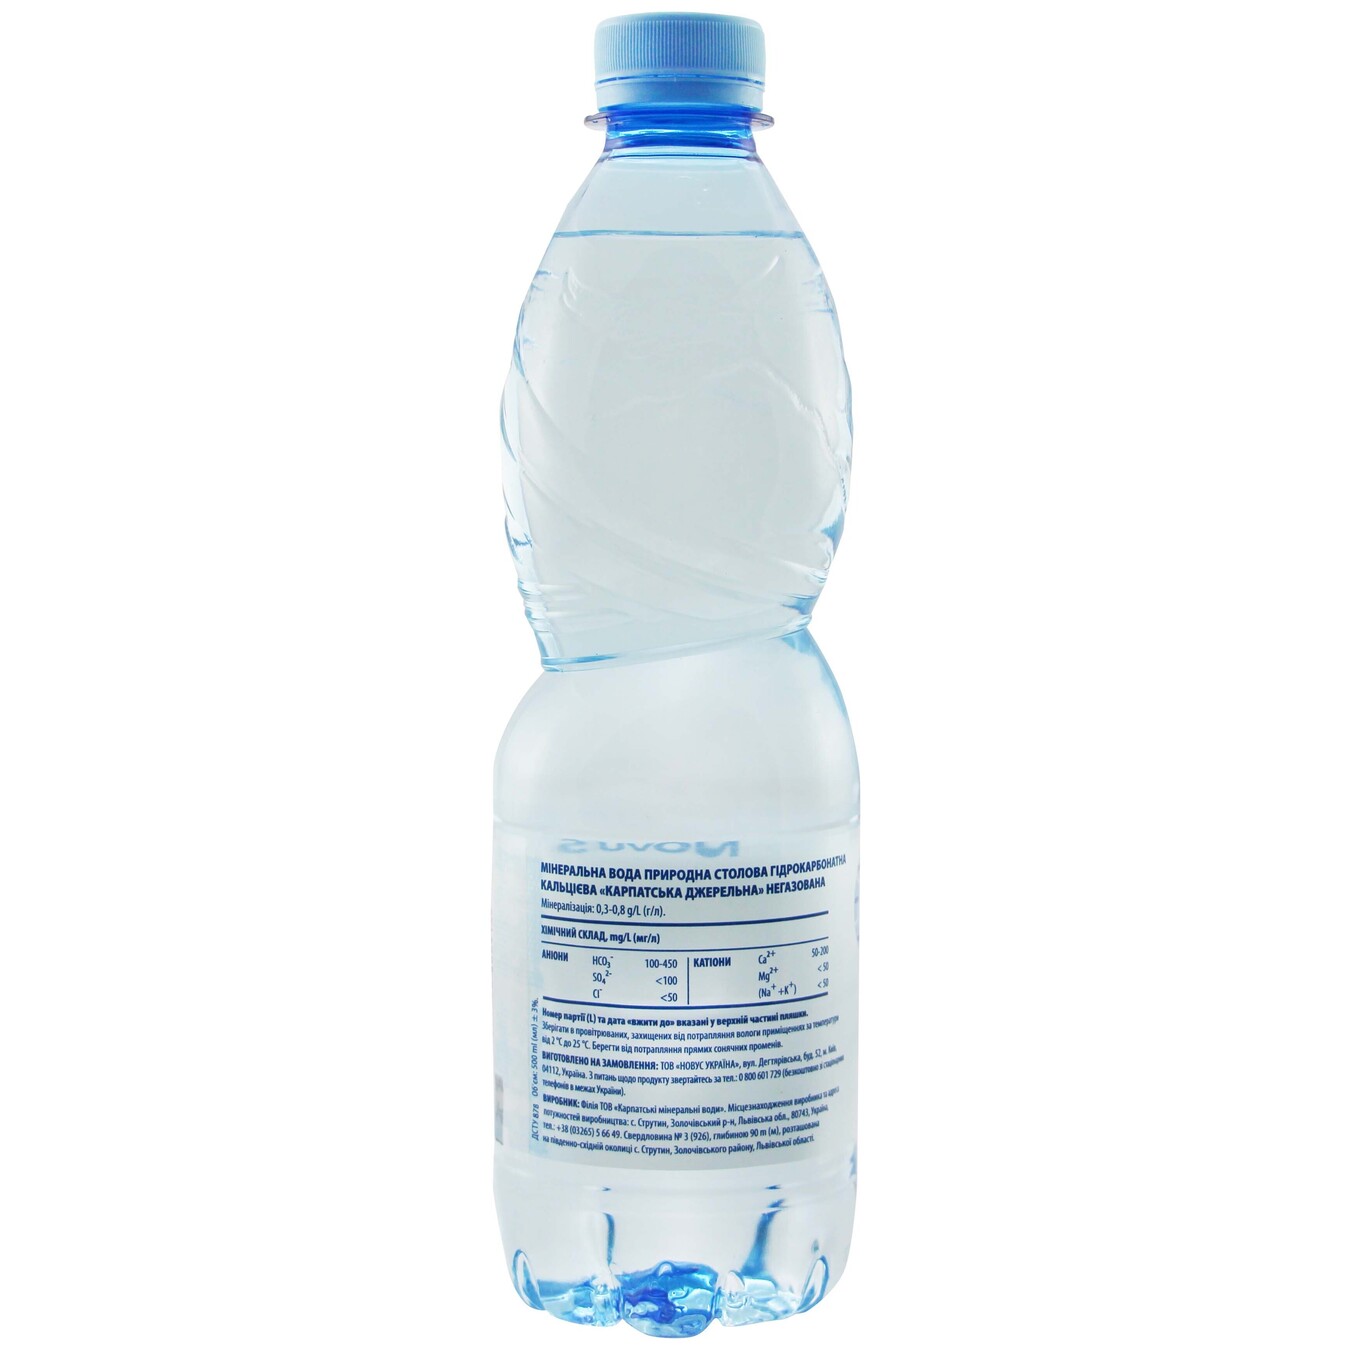 NOVUS Karpats'ka Dzherel'na Non-Carbonated Mineral Water 0,5l 2